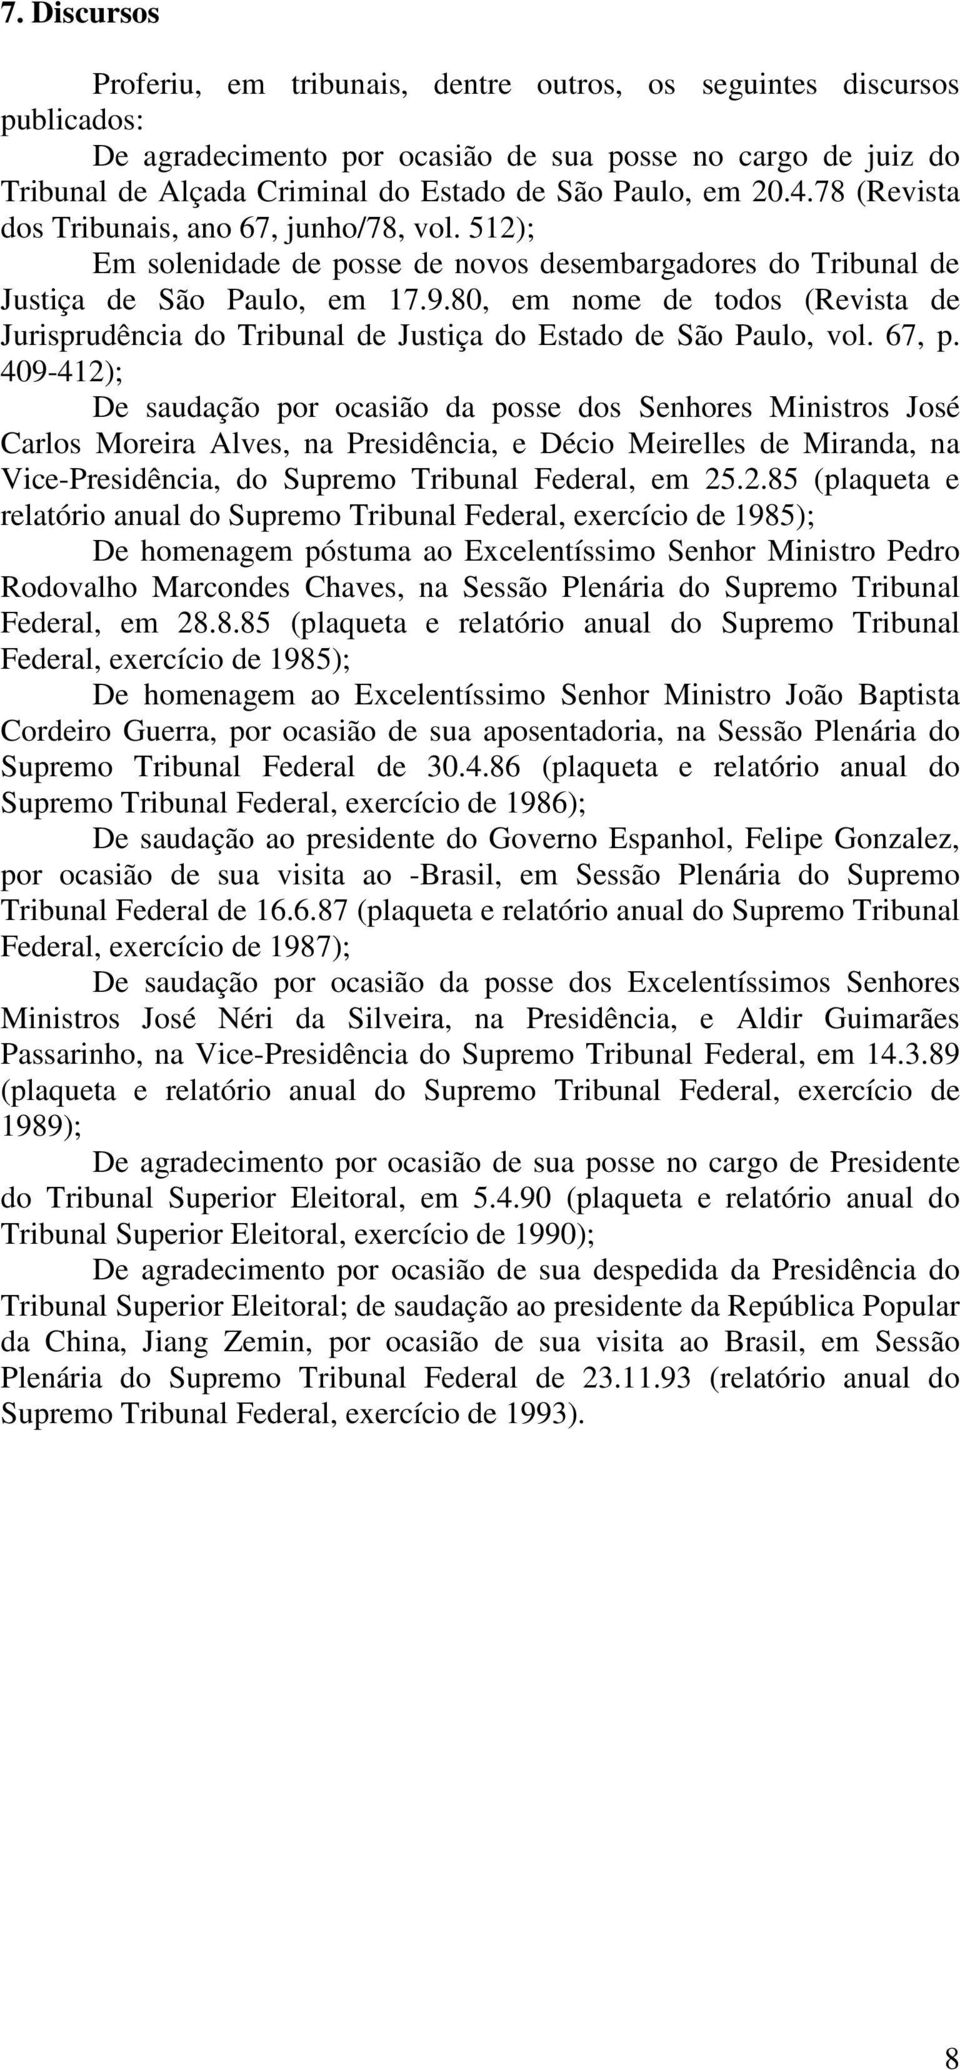 80, em nome de todos (Revista de Jurisprudência do Tribunal de Justiça do Estado de São Paulo, vol. 67, p.